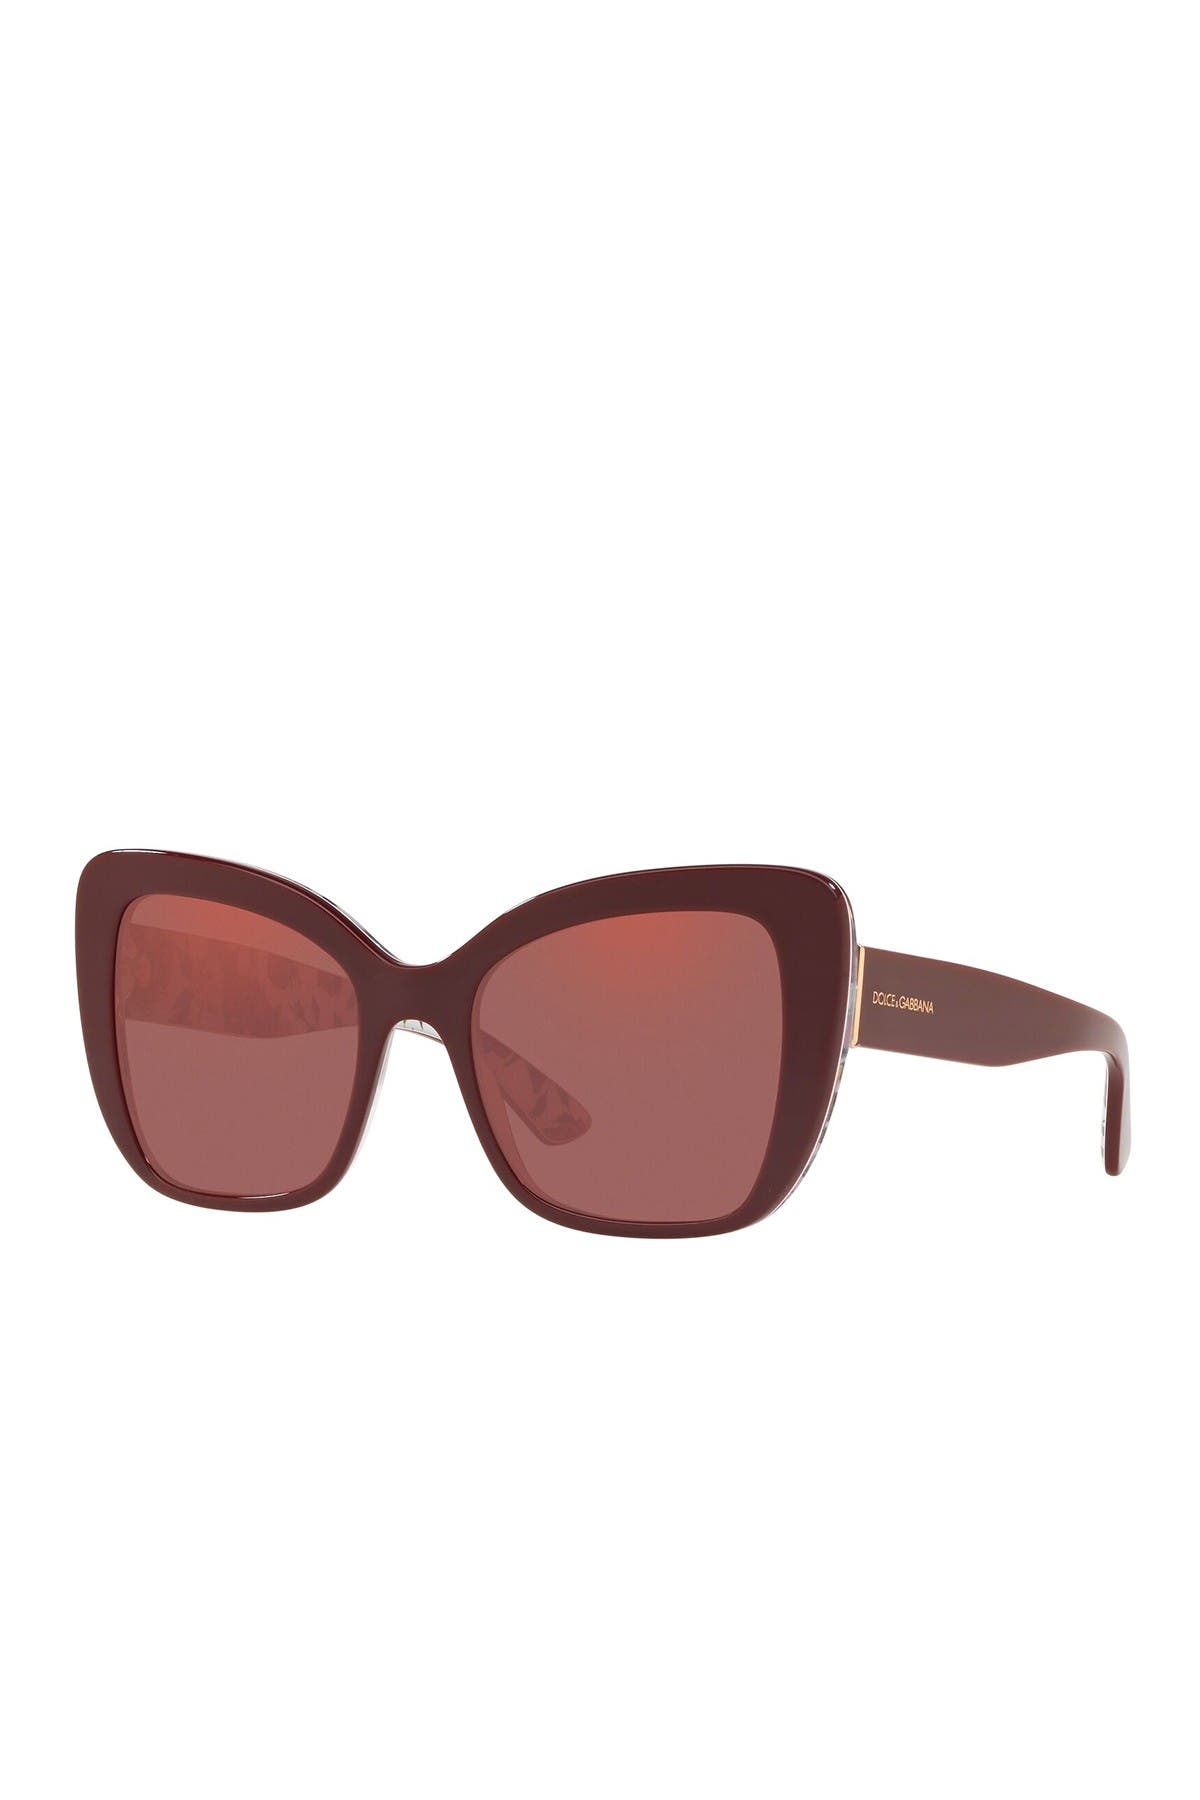 d&g butterfly sunglasses